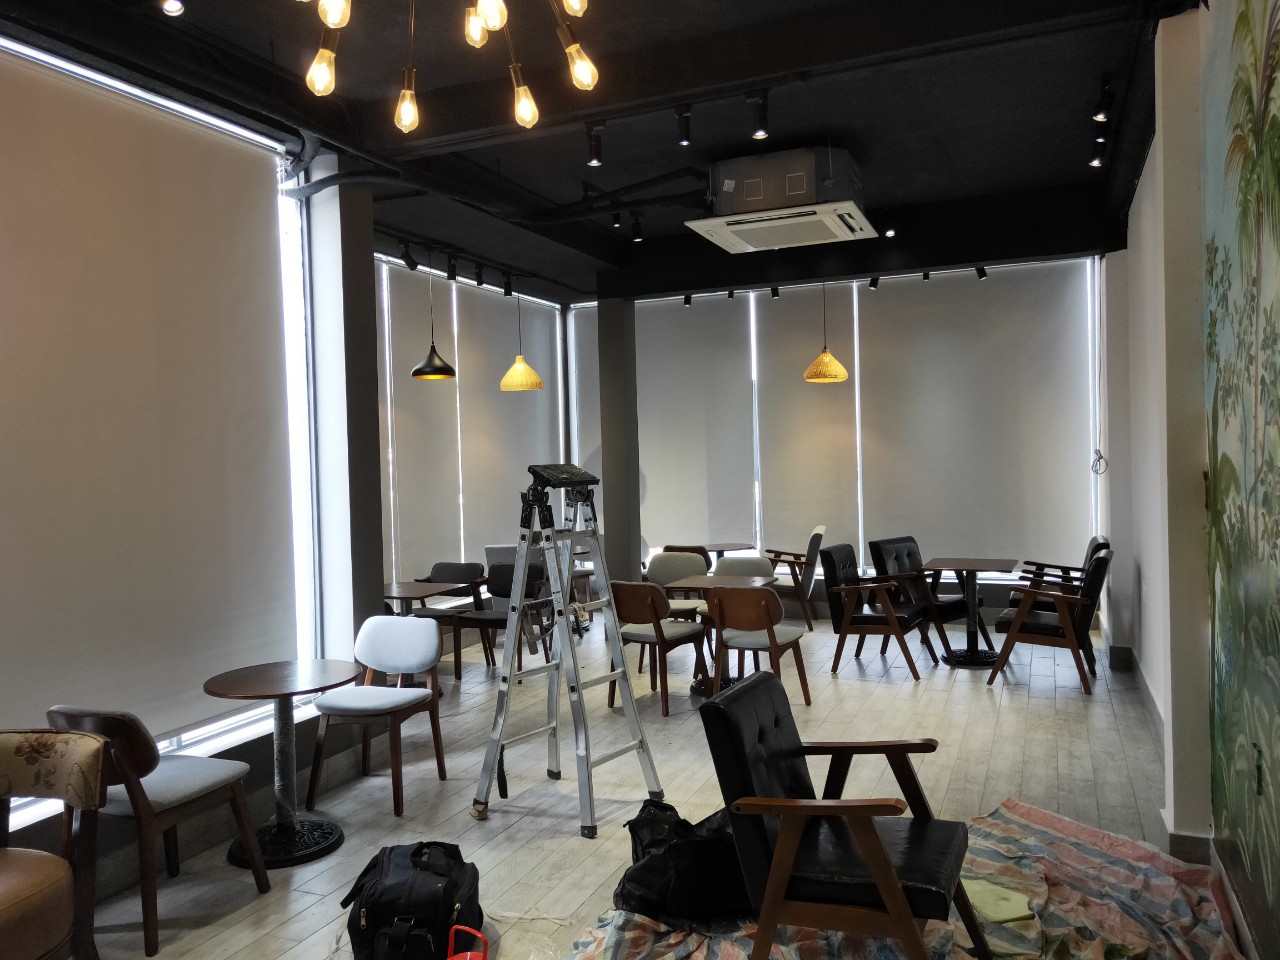 Rèm cửa Huy Hoàng nhận tư vấn, thiết kế và thi công các loại rèm phù hợp với không gian quán cafe, nhà hàng…